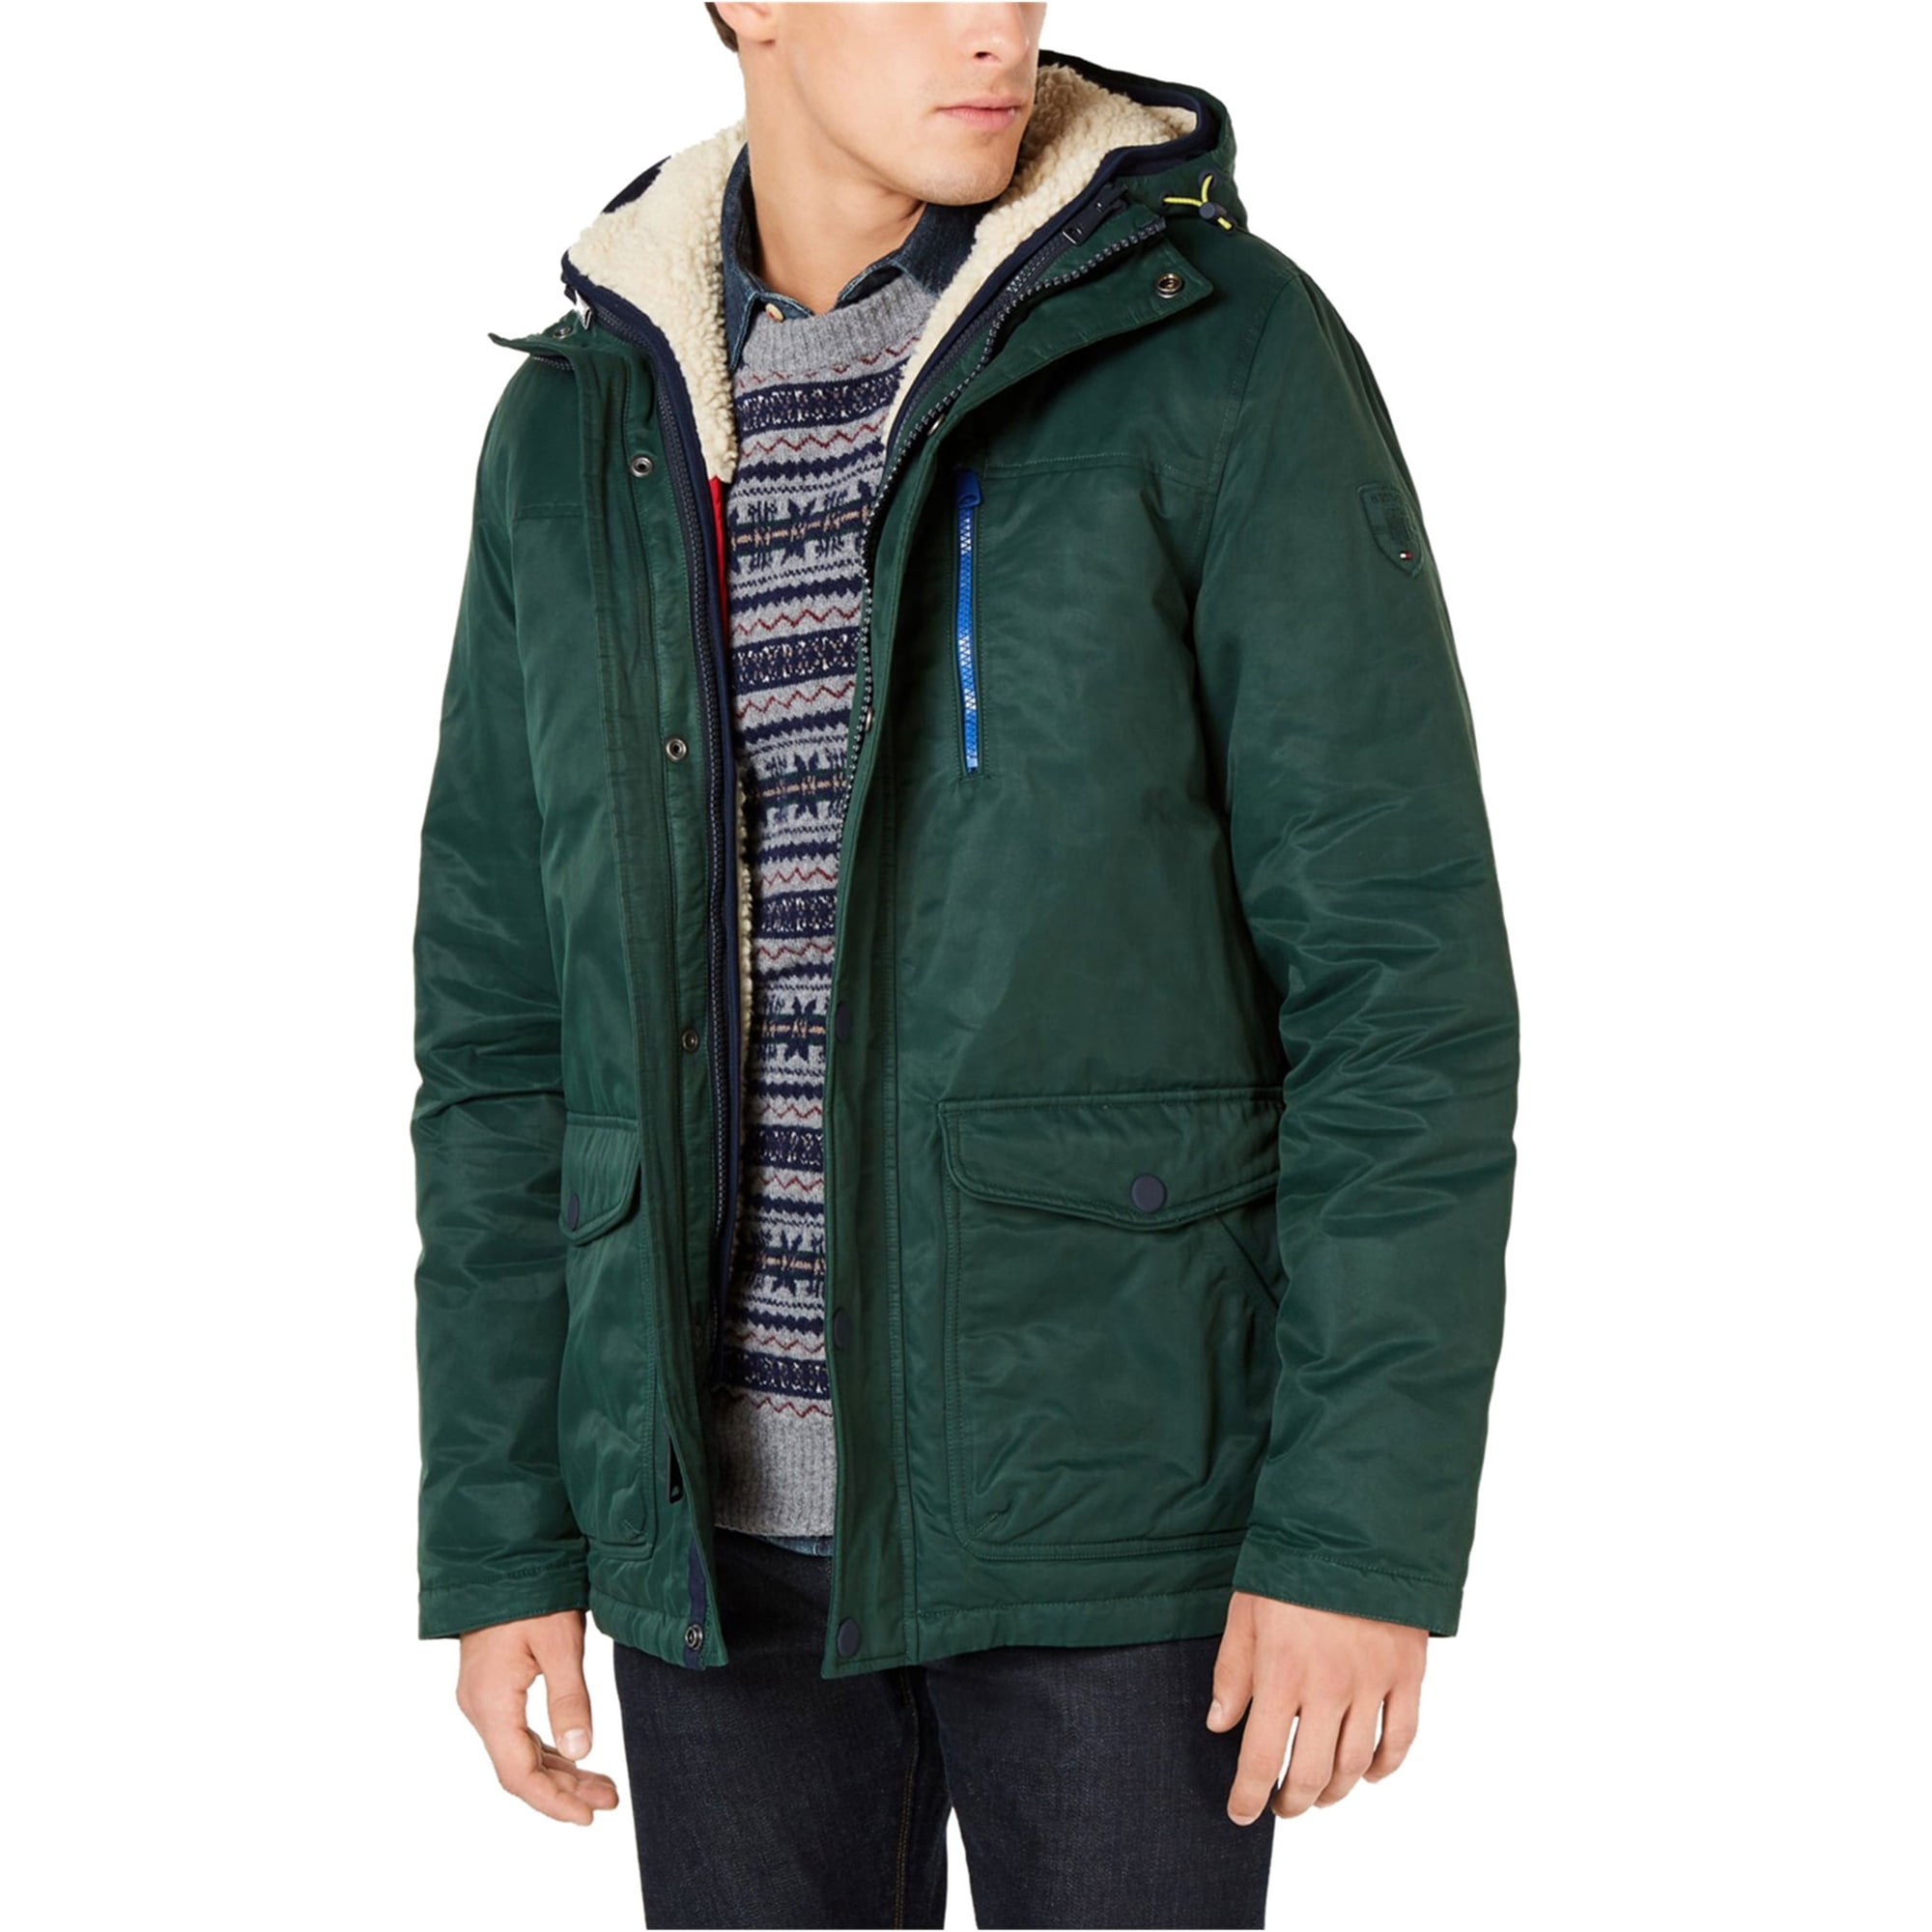 Tommy Hilfiger Mens Hilltop Hooded Coat, Green, Medium - Walmart.com